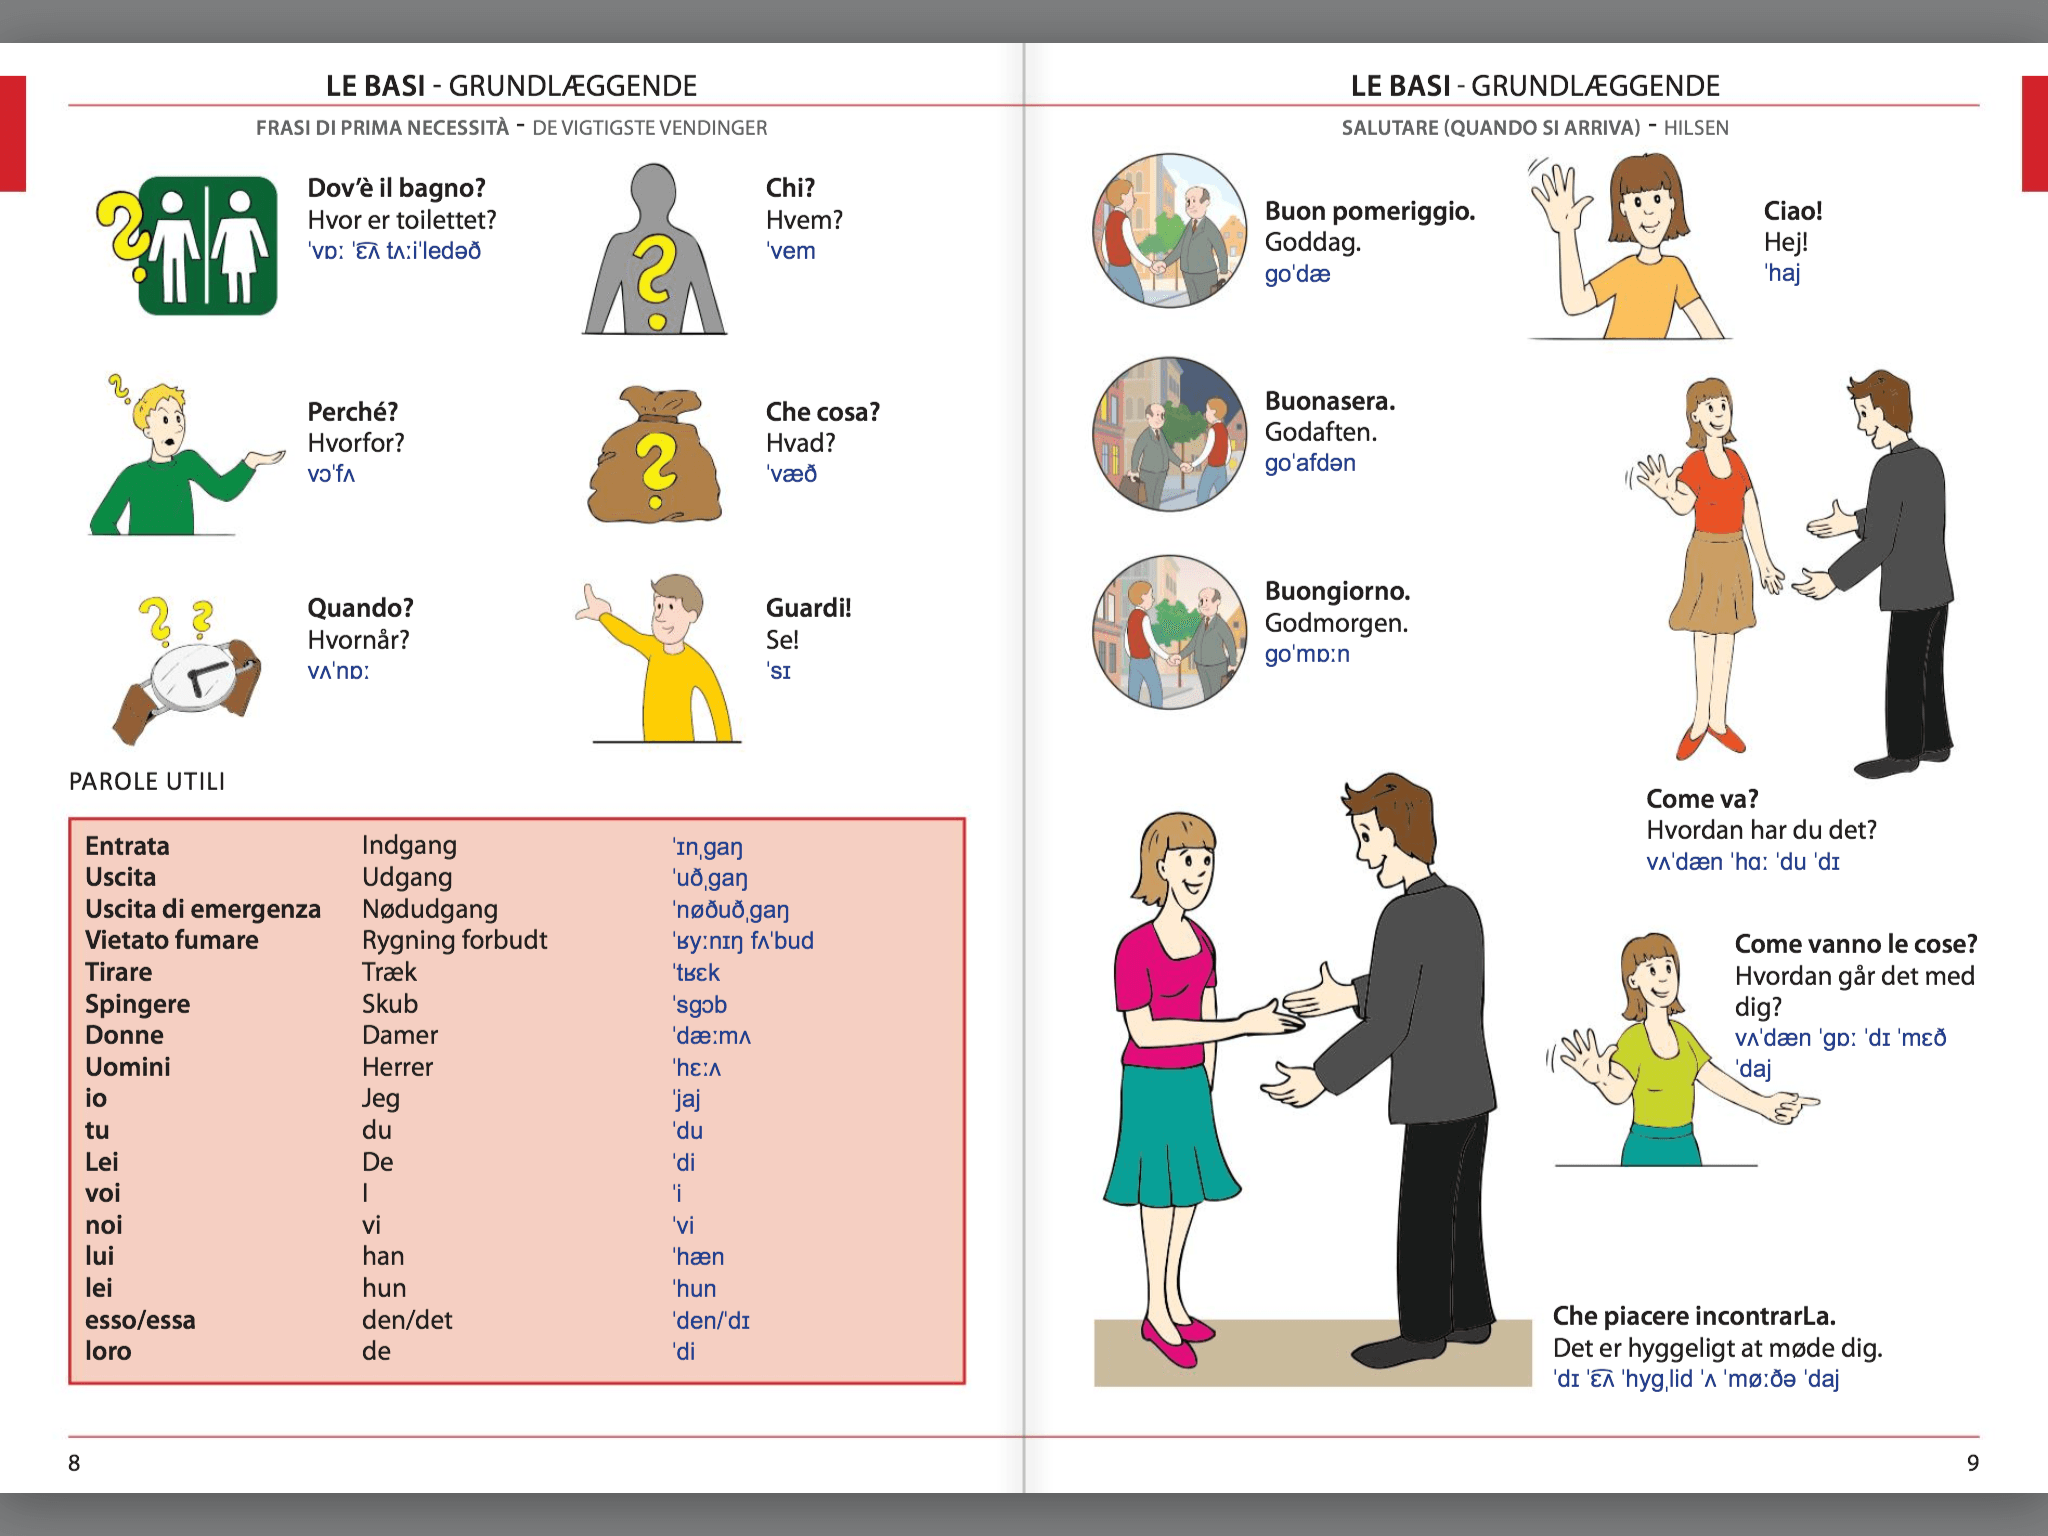 Manuale di conversazione illustrato Italiano-Danese